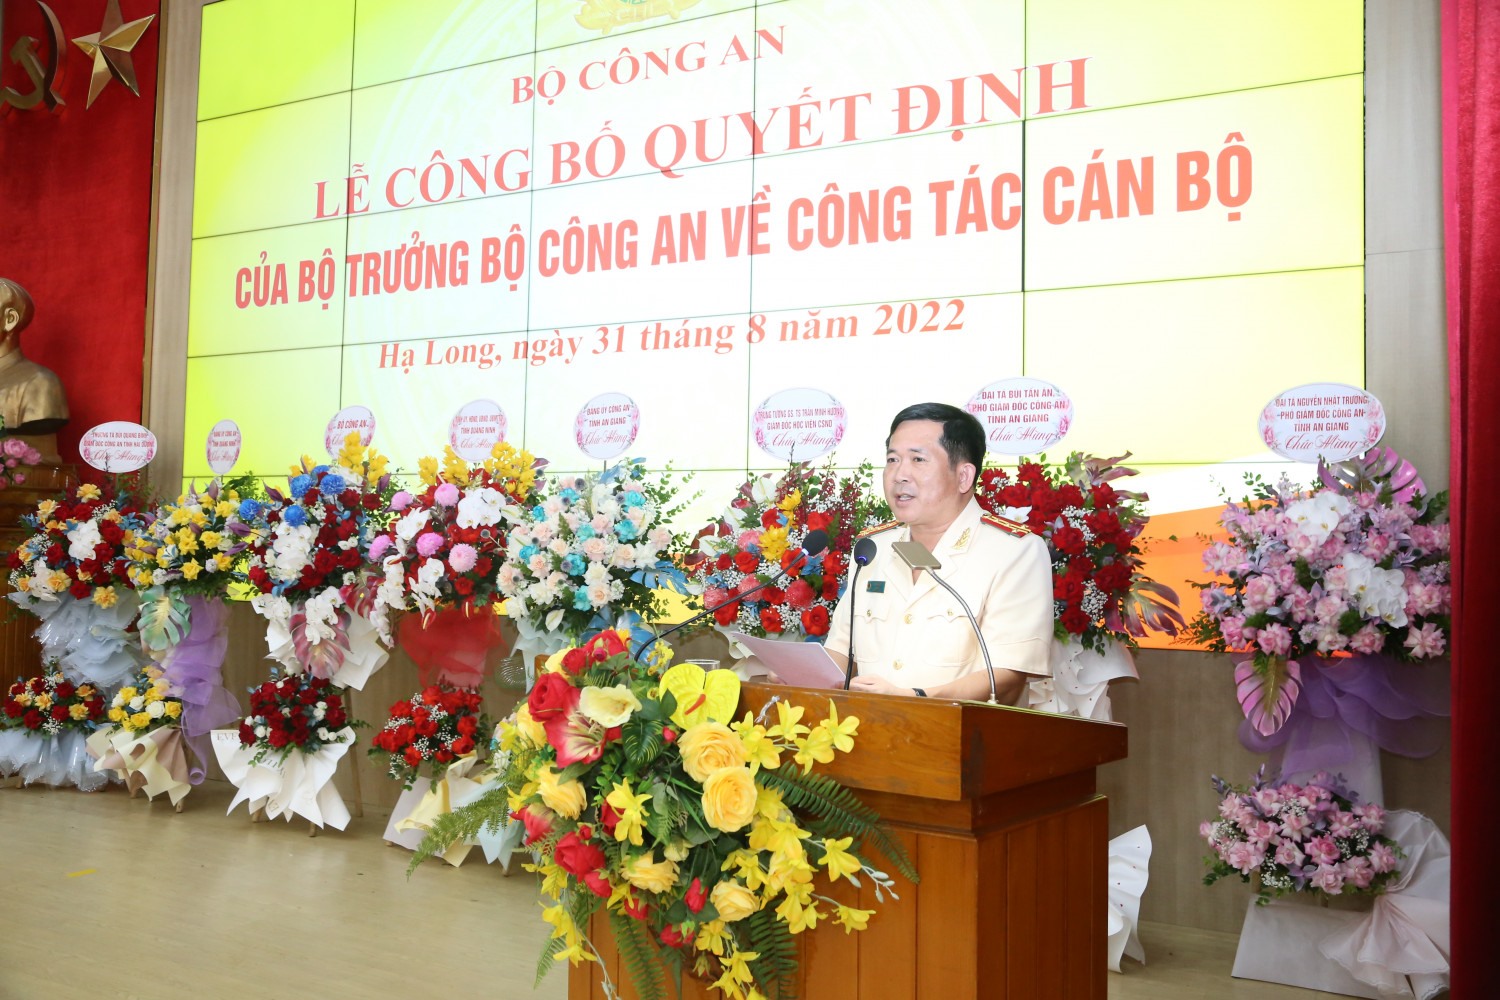 Tân giám đốc Công an tỉnh Quảng Ninh phát biểu nhận nhiệm vụ. Ảnh: Công thông tin Công an tỉnh Quảng Ninh